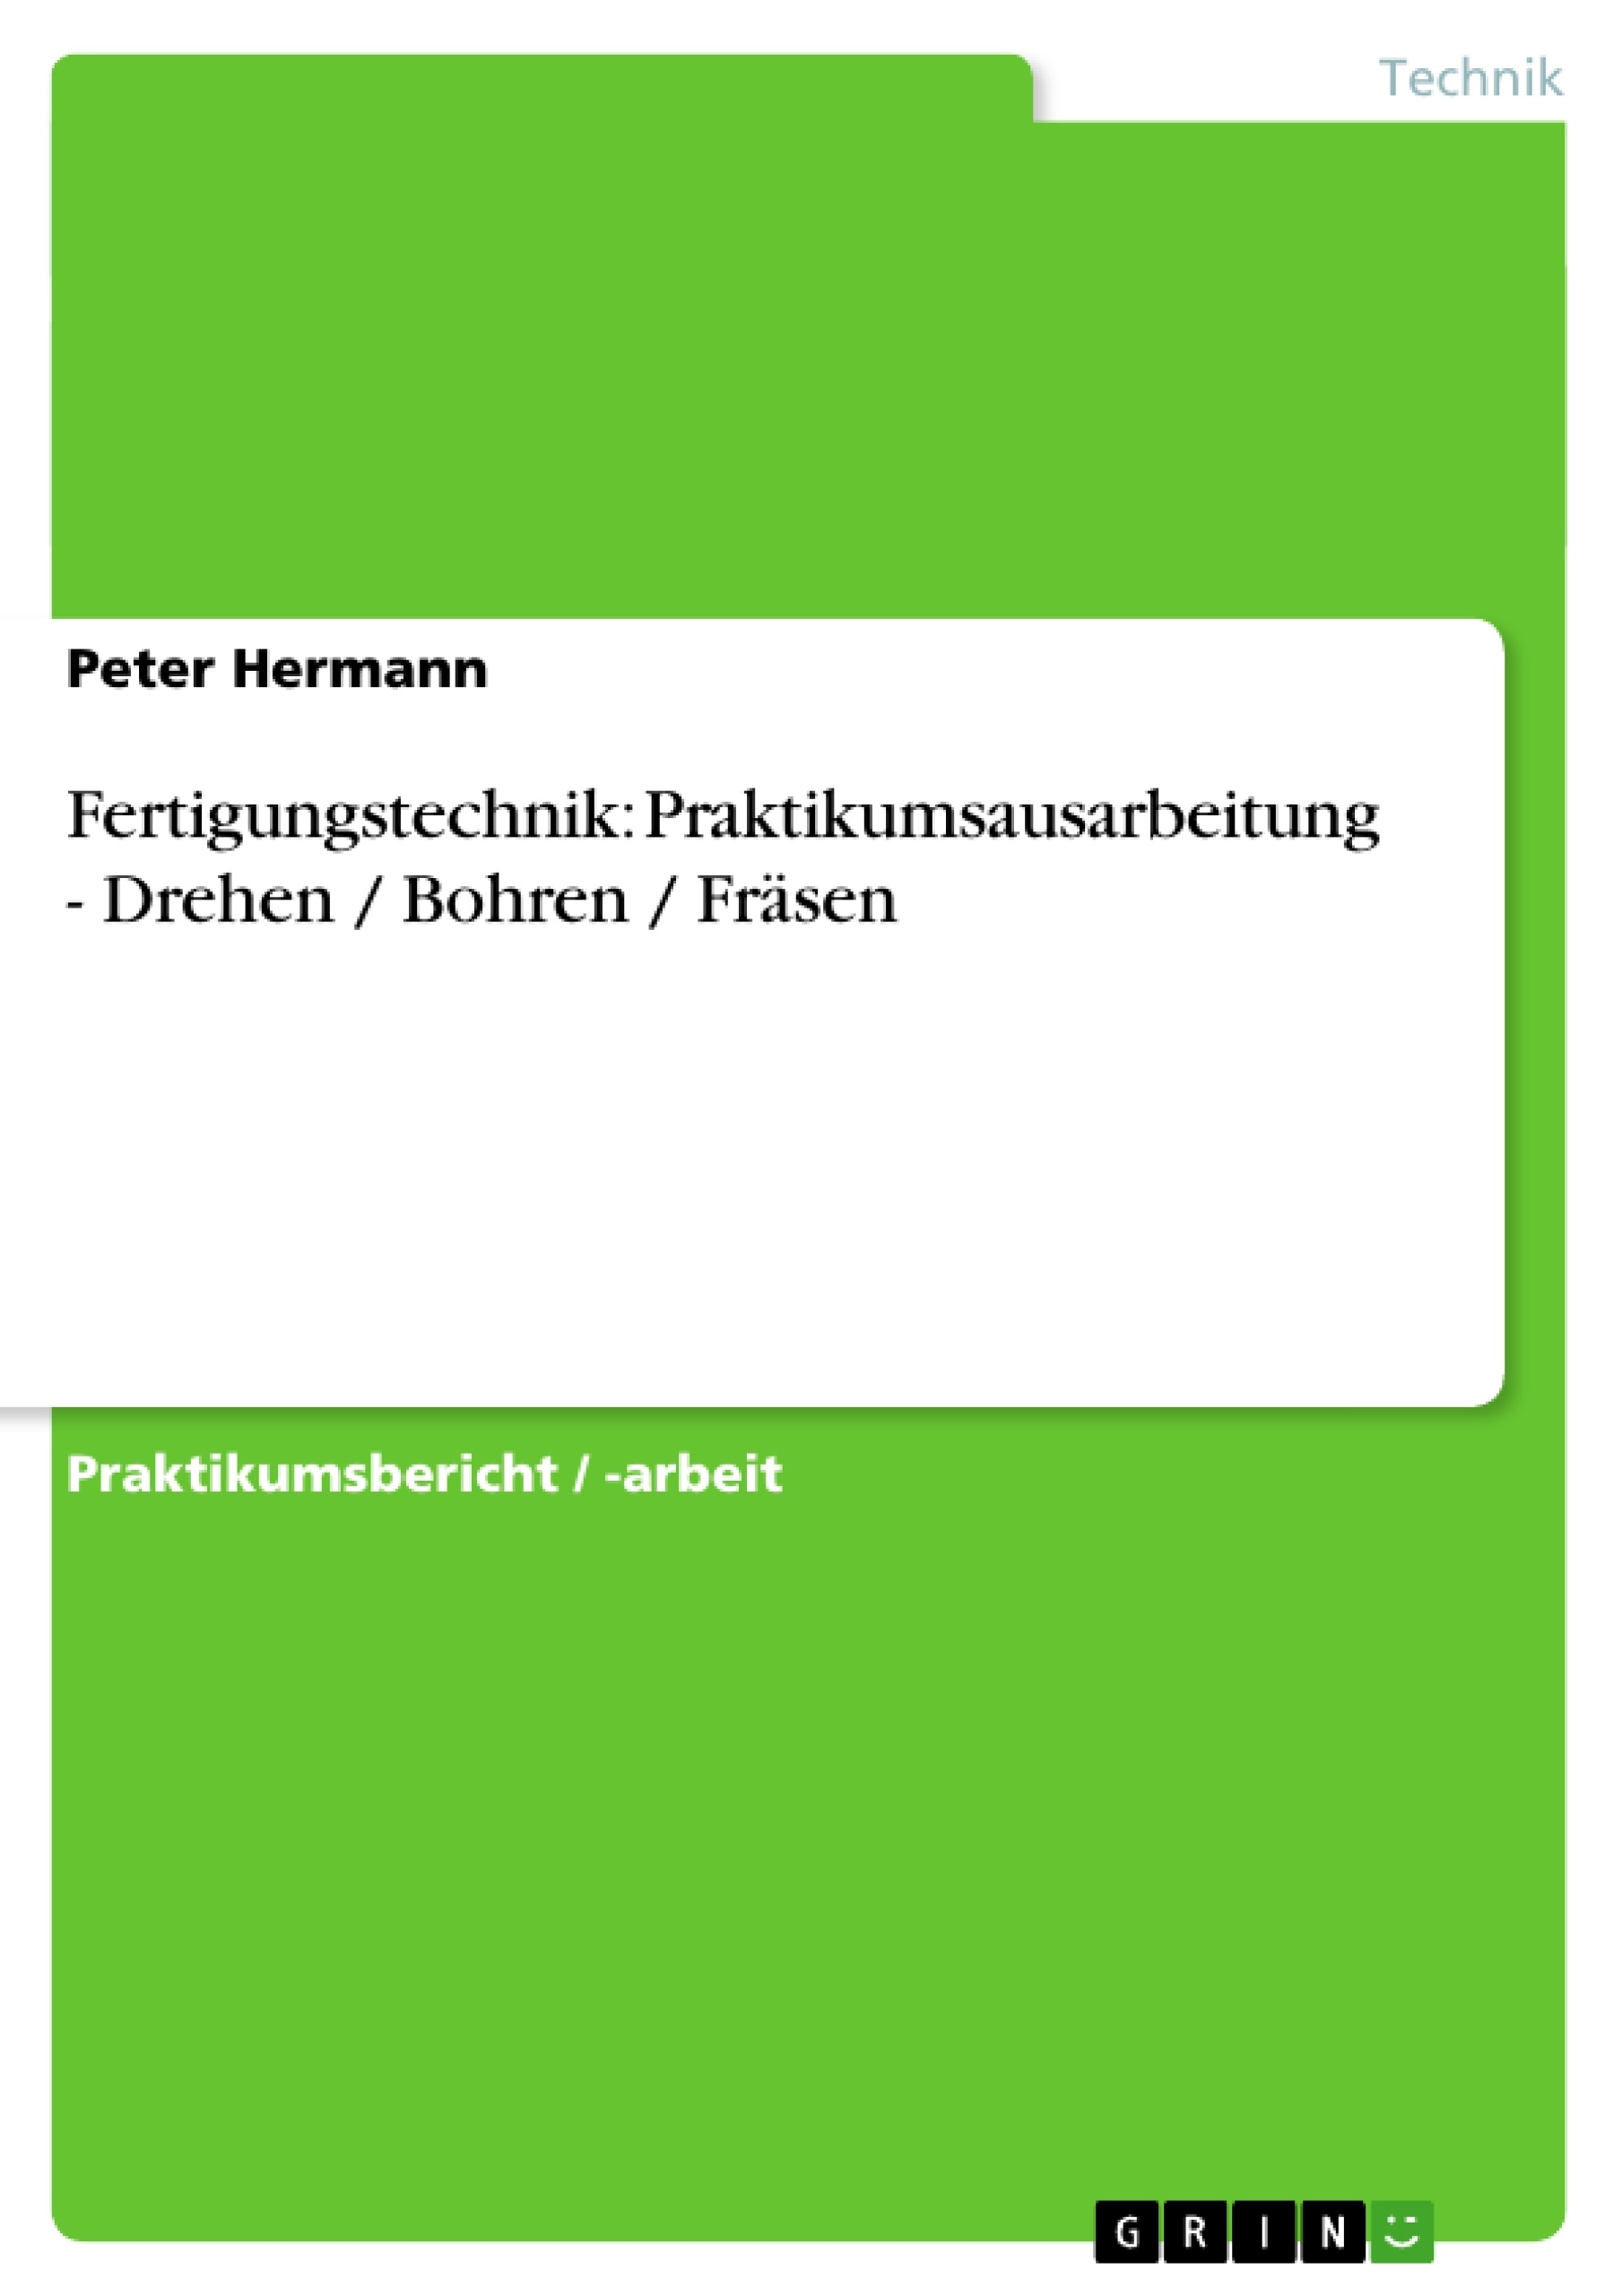 Título: Fertigungstechnik: Praktikumsausarbeitung - Drehen / Bohren / Fräsen